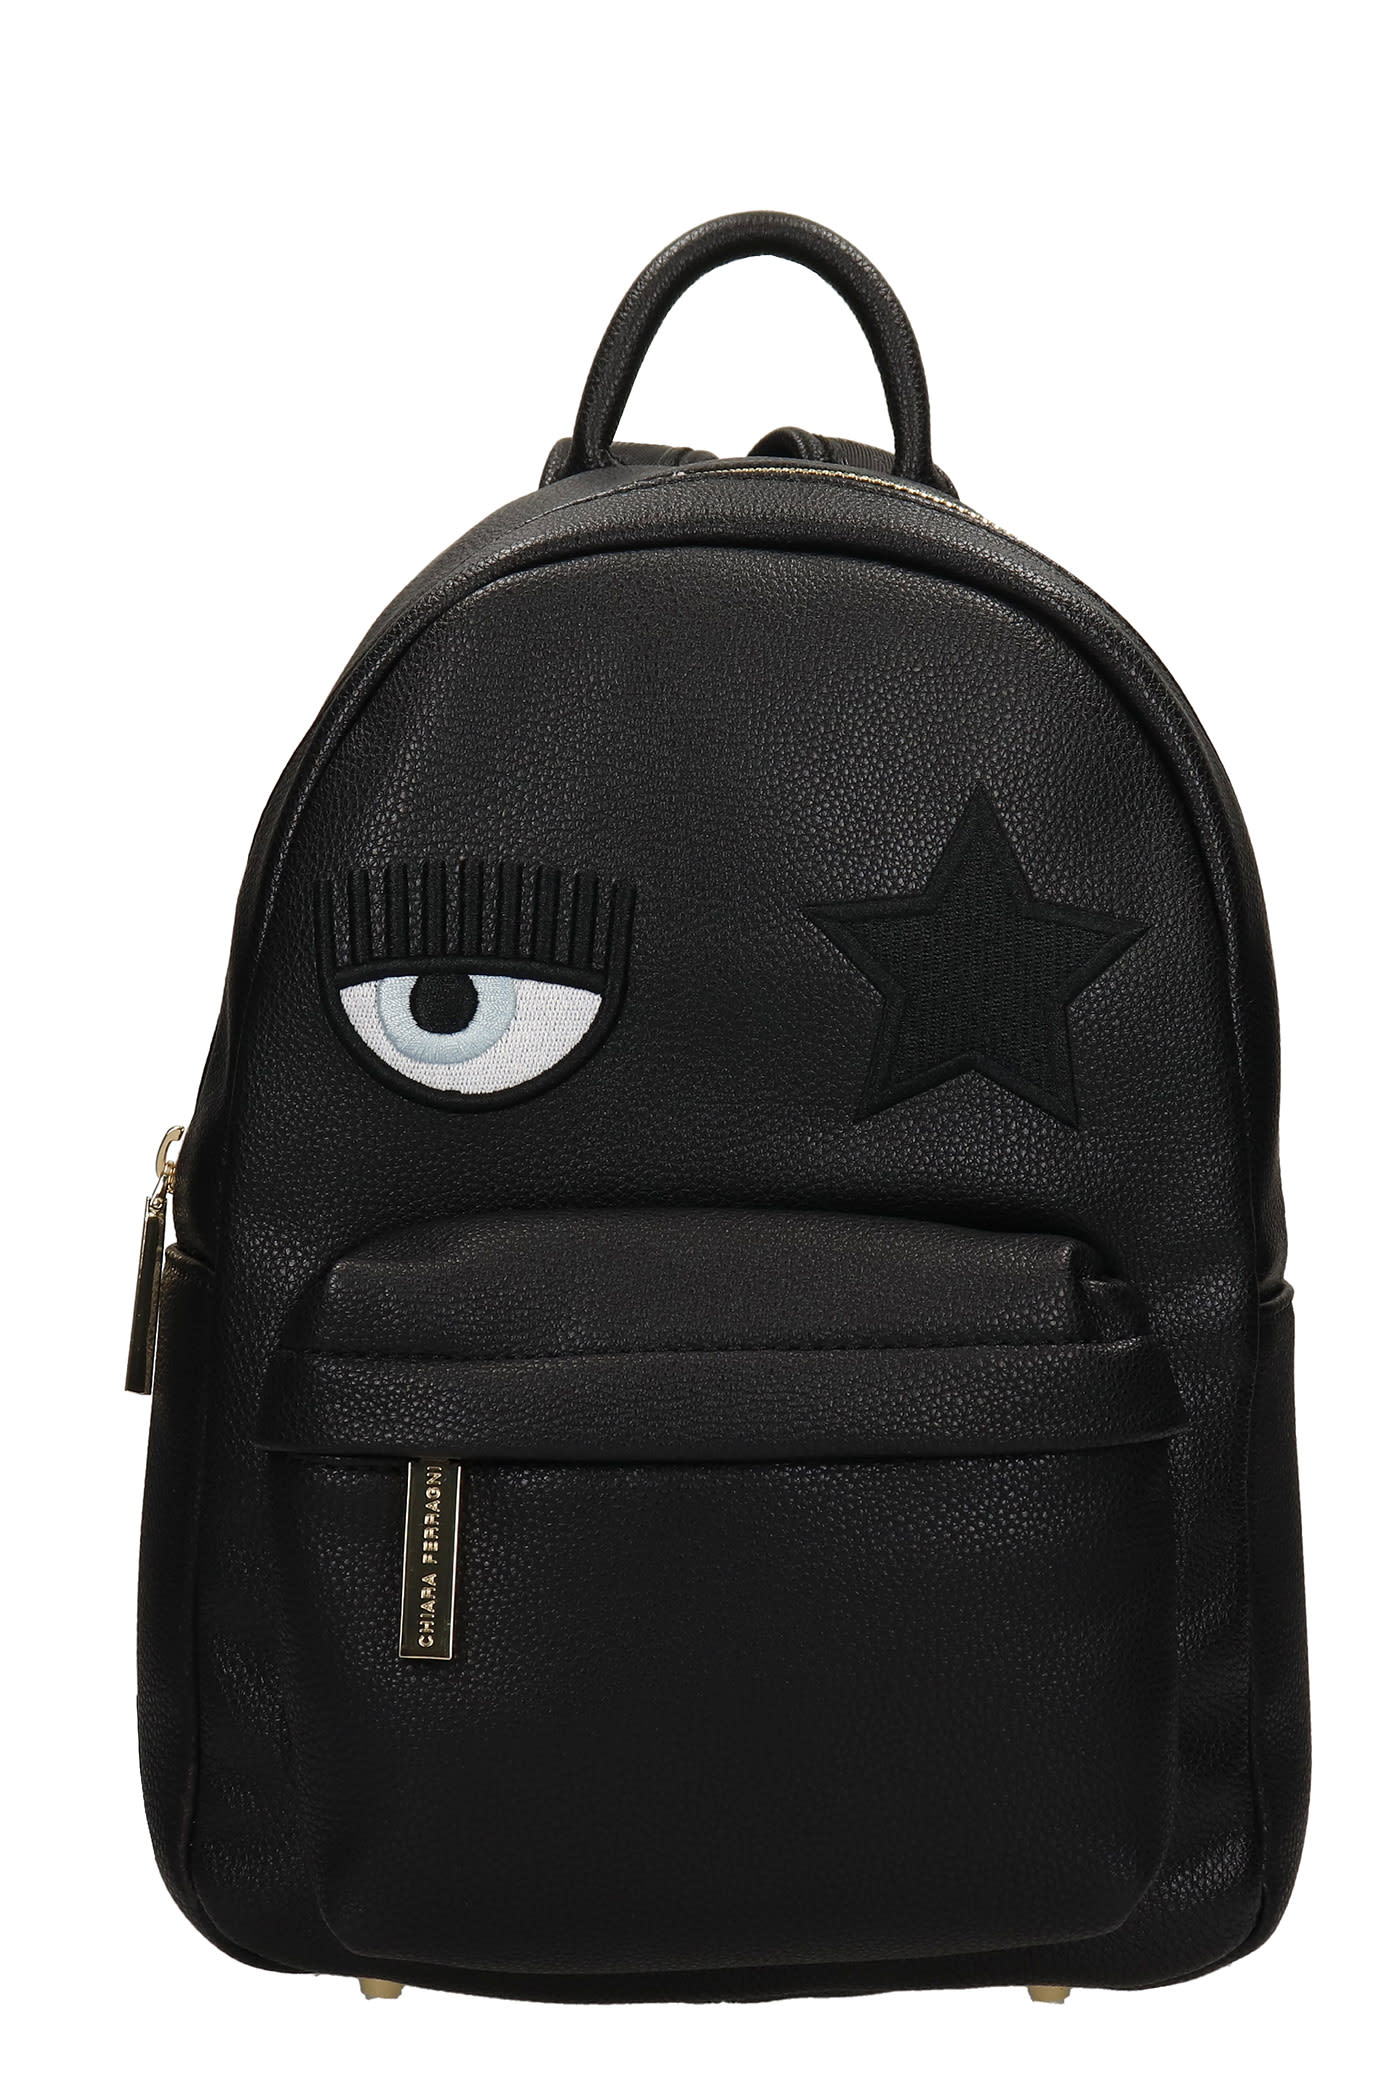 Chiara Ferragni Backpack In Black Faux Leather